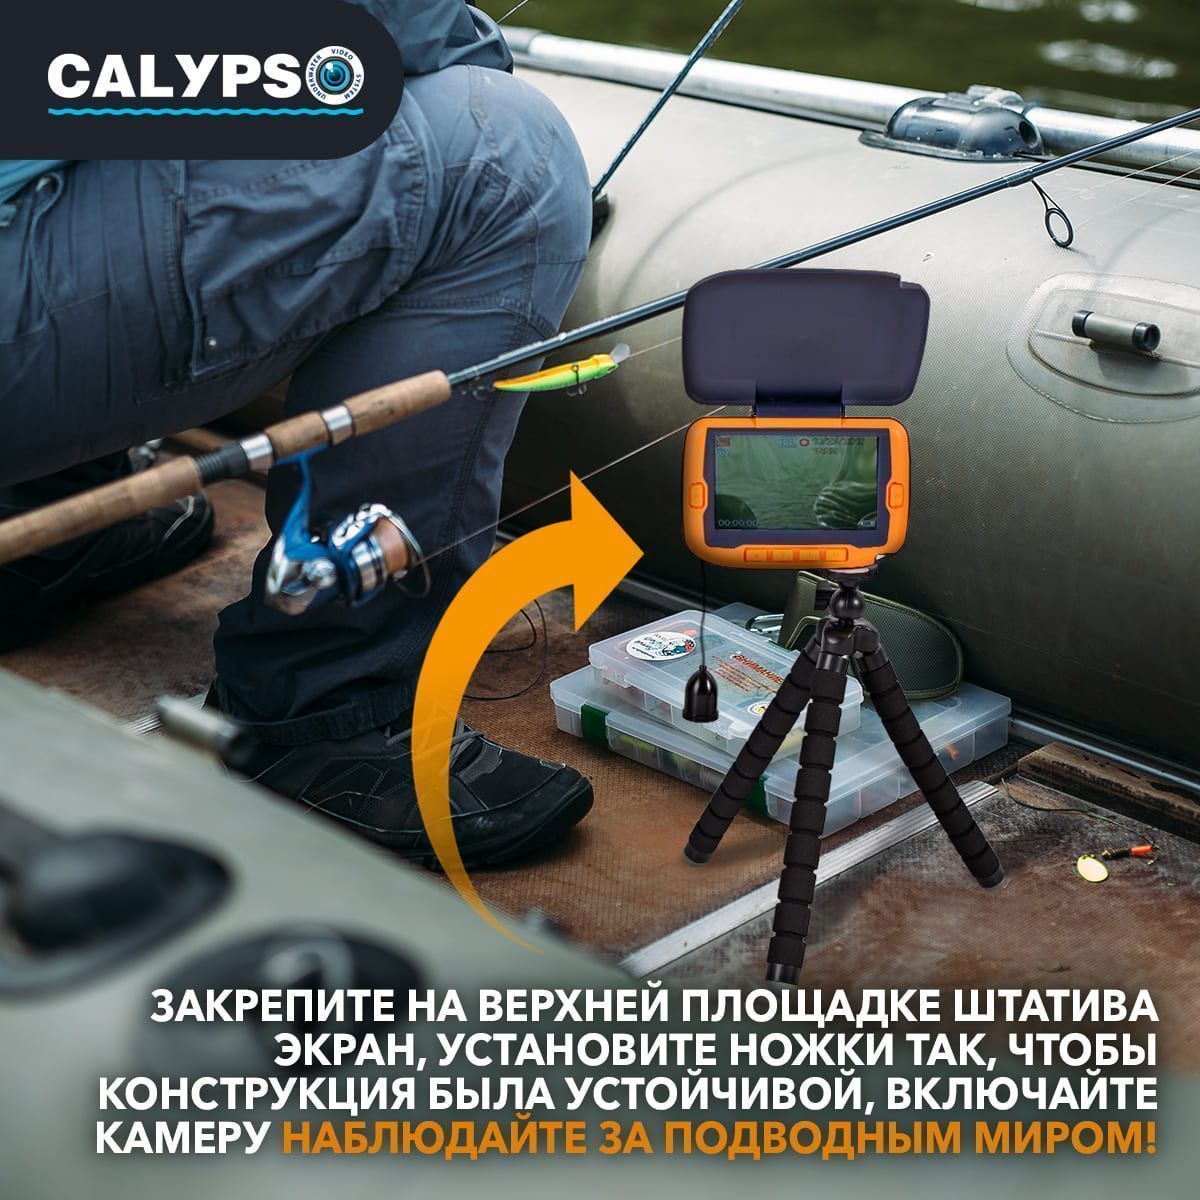 Тренога пластиковая для подводных  видеокамер модели CALYPSO